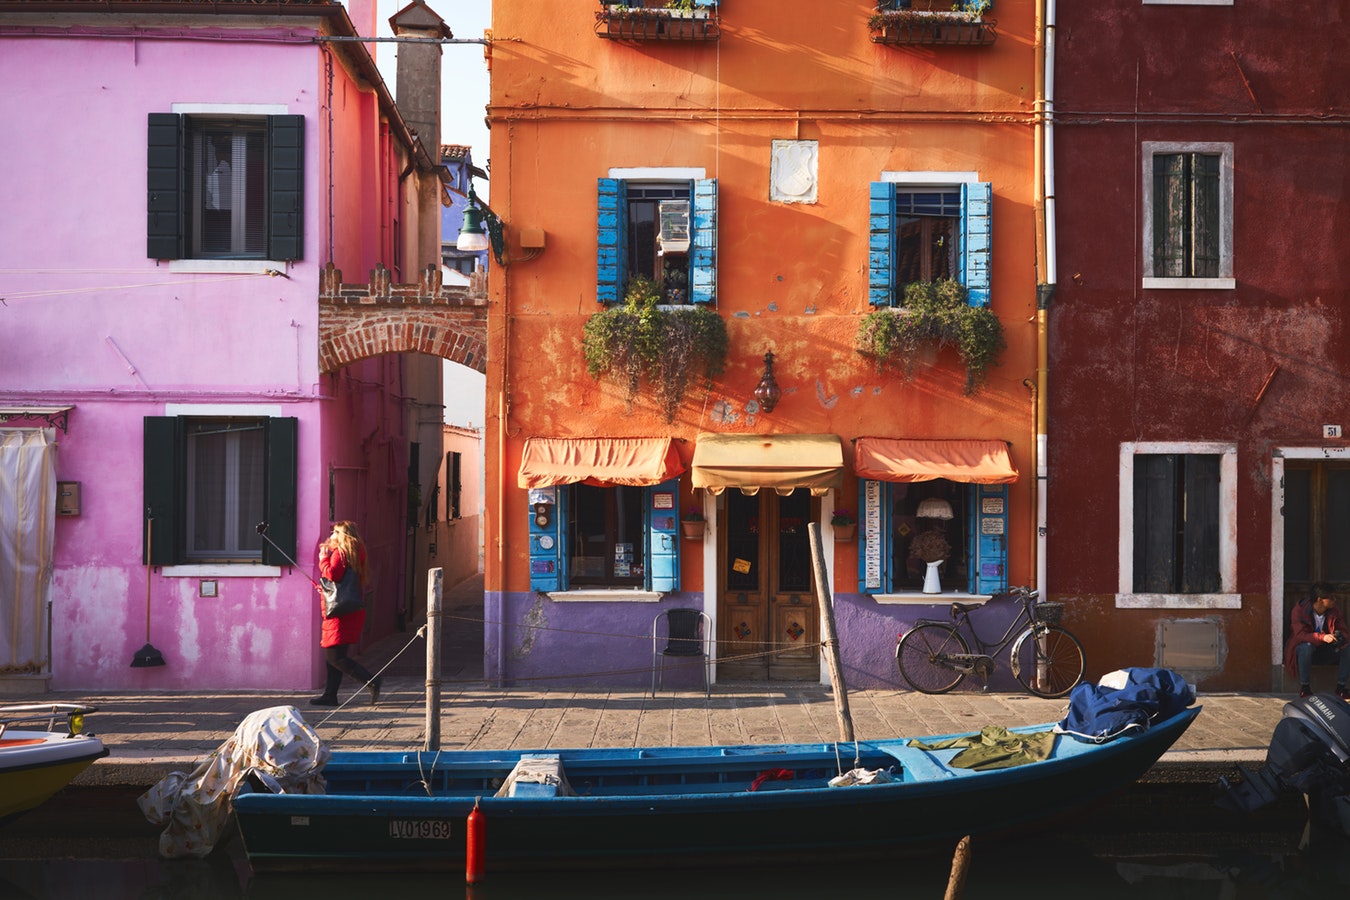 Мурано и Бурано - две от съкровищата на Италия, които трябва да посетите